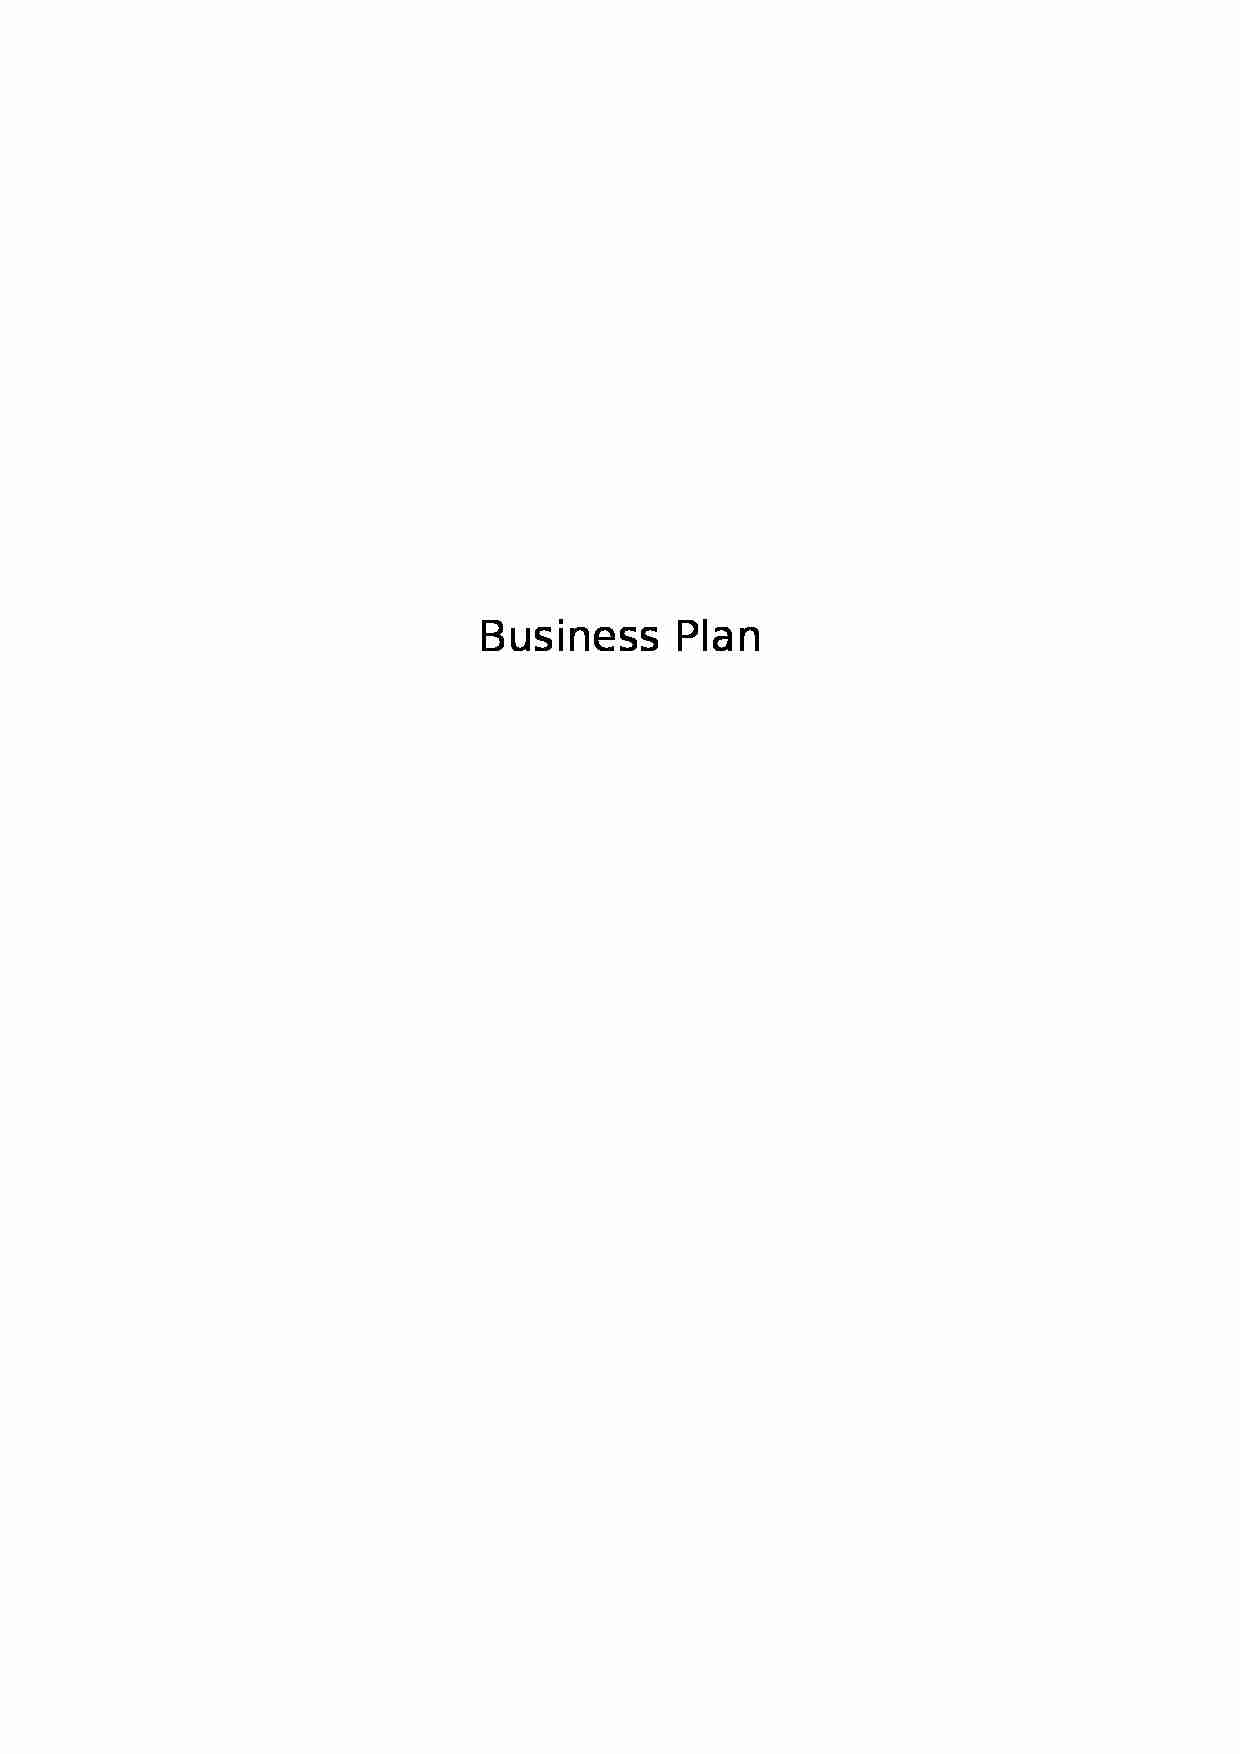 Biznes plan - sklep - prezentacja przedsiębiorstwa - strona 1